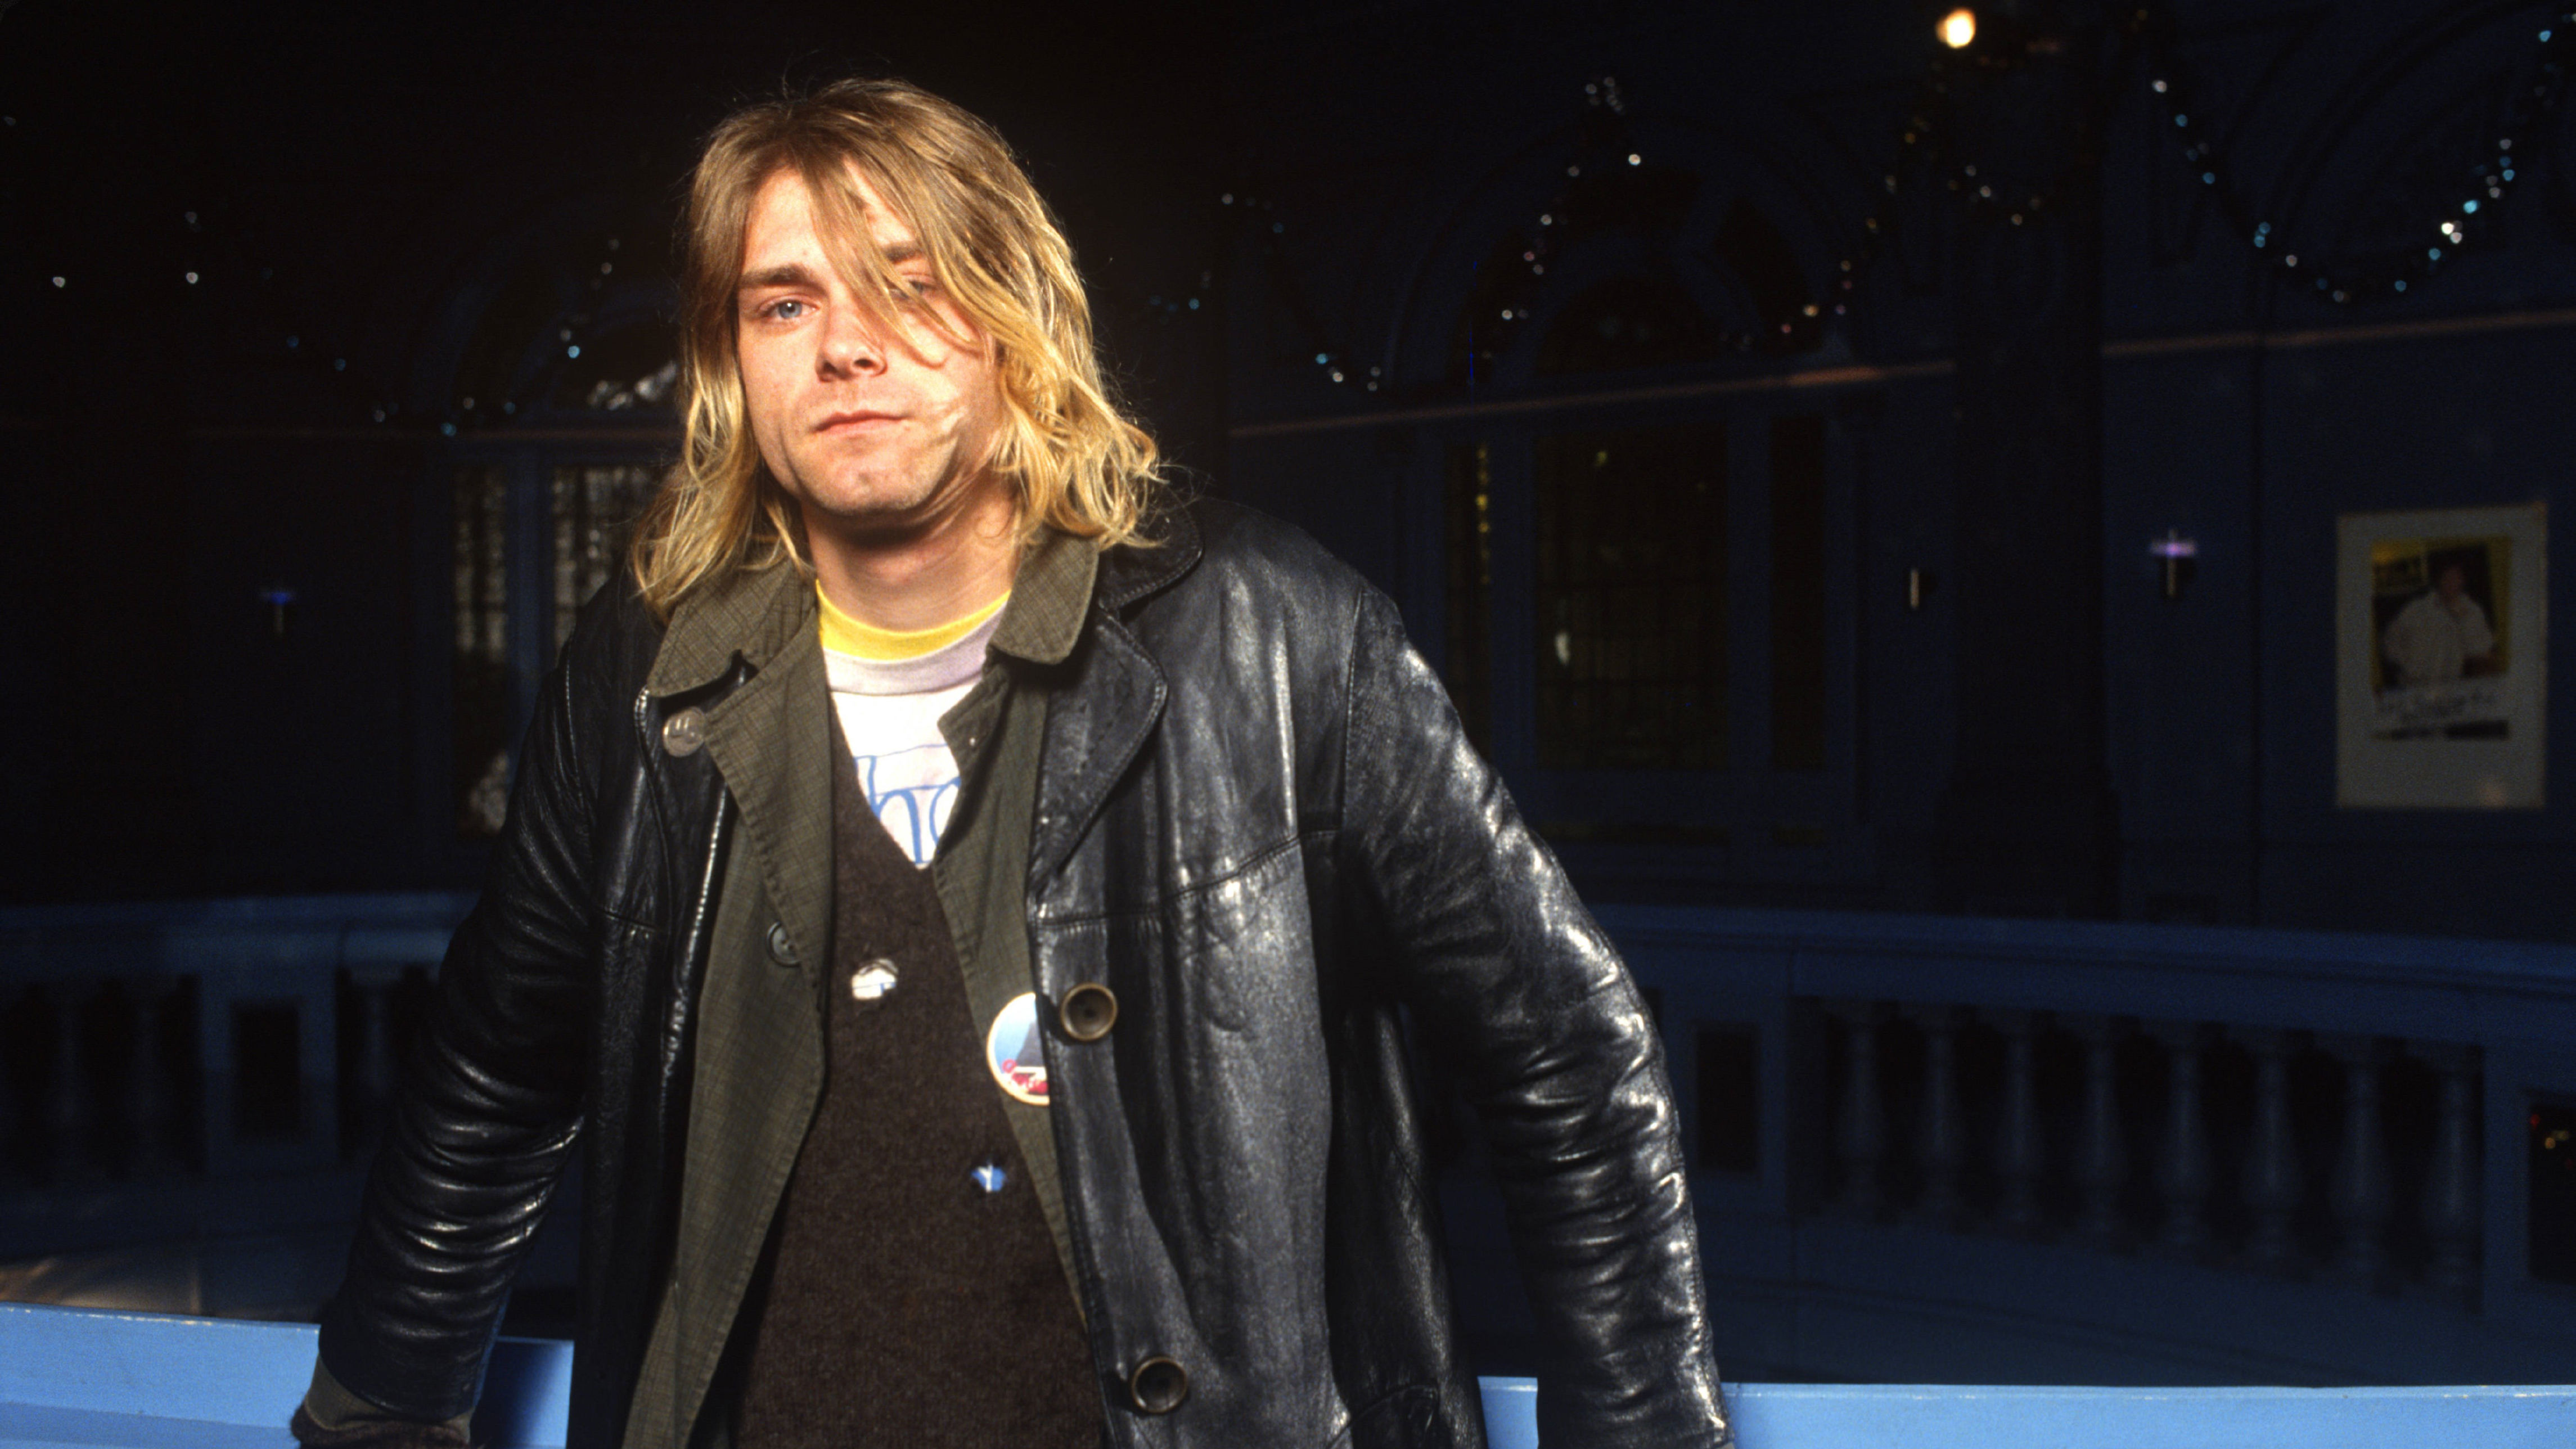 Nel 1994, il frontman dei Nirvana Kurt Cobain morì senza un testamento valido all'età di 27 anni. Il suo patrimonio fu valutato in 450 milioni di dollari. Courtney Love, la moglie di Cobain, fu considerata l'erede principale del patrimonio, mentre per la figlia Frances Bean fu istituito un trust.